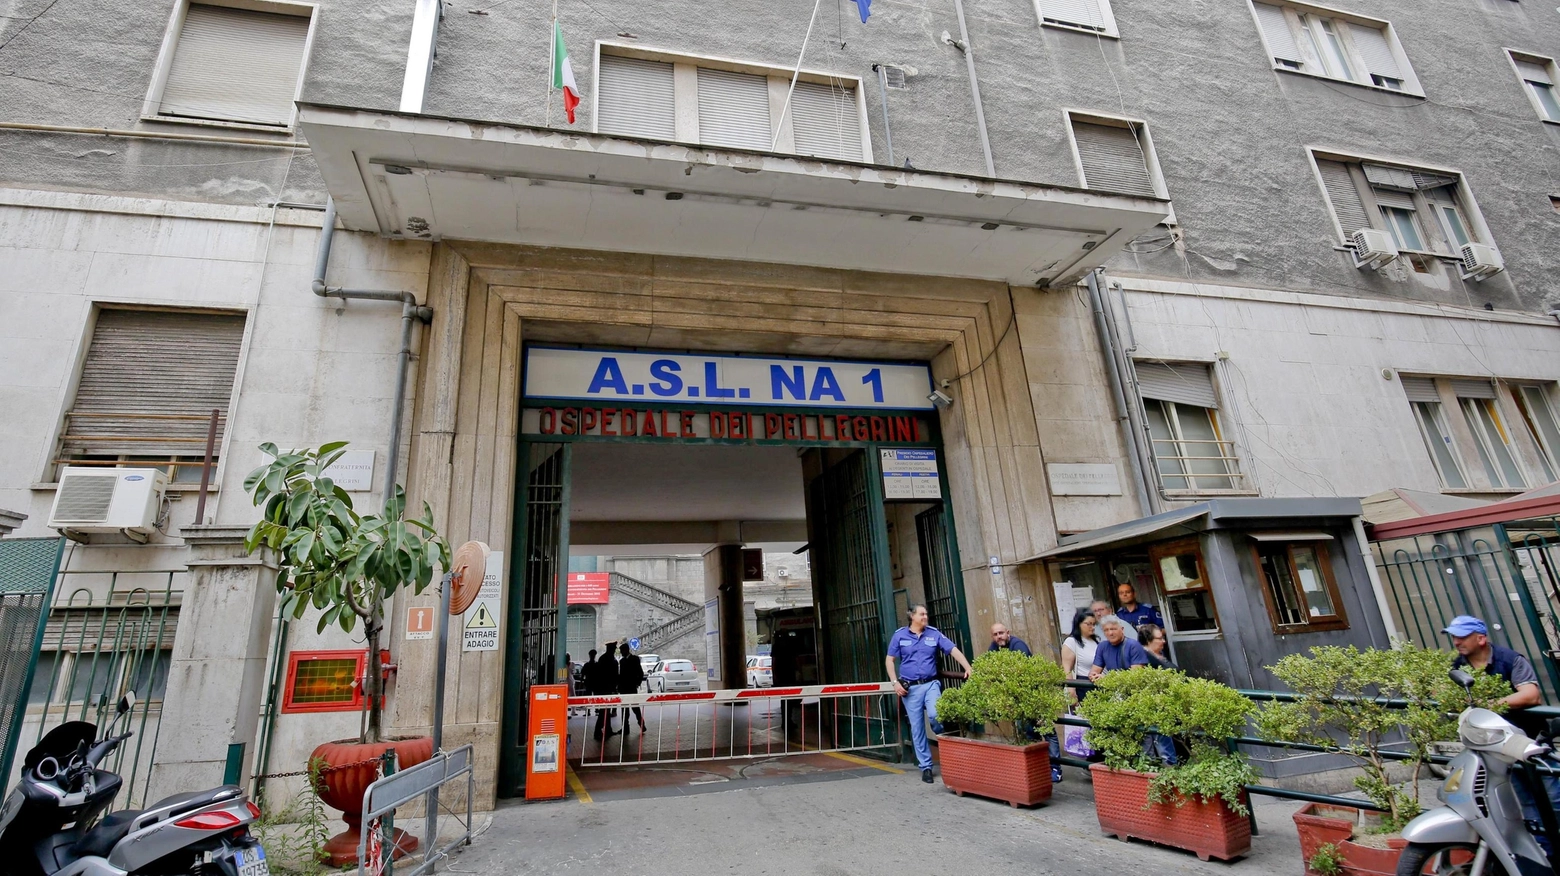 L'ospedale "Vecchio Pellegrini" della Asl Napoli 1 (foto d'archivio)